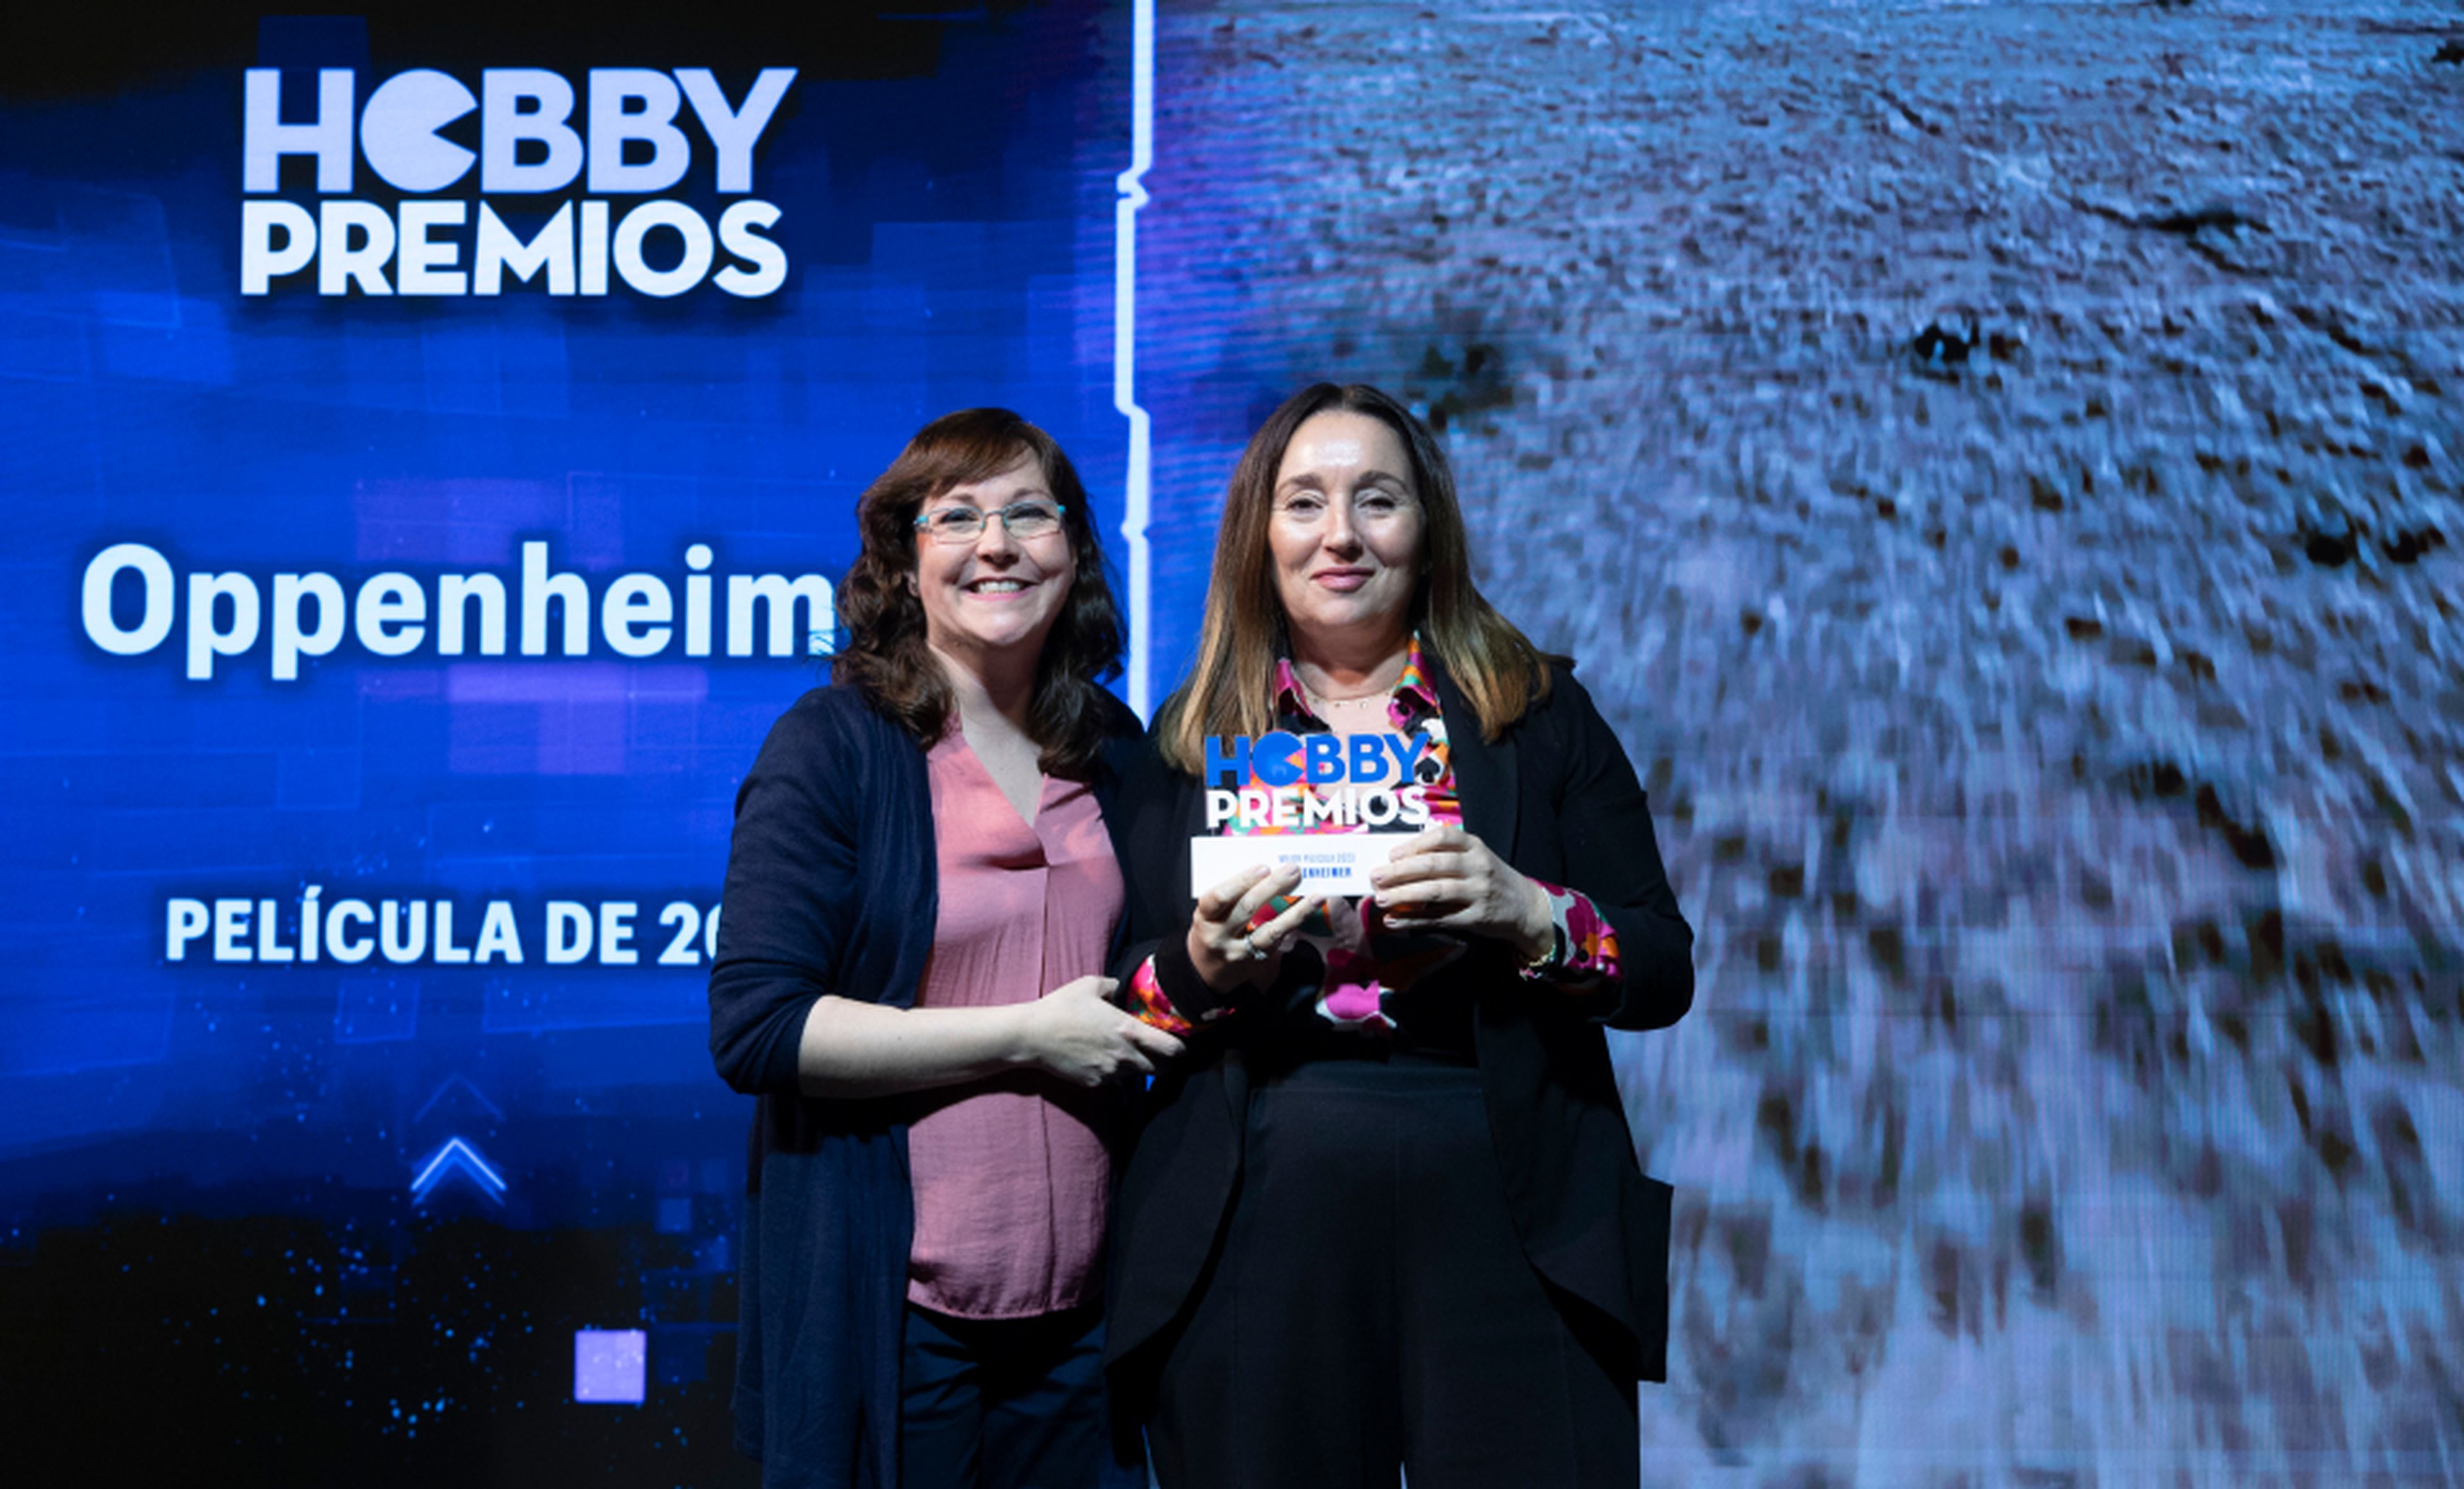 Leonor Martínez, directora de marketing de Universal Pictures recoge de manos de Raquel Hernández, redactora de HobbyCine el premio a mejor película para Oppenheimer.